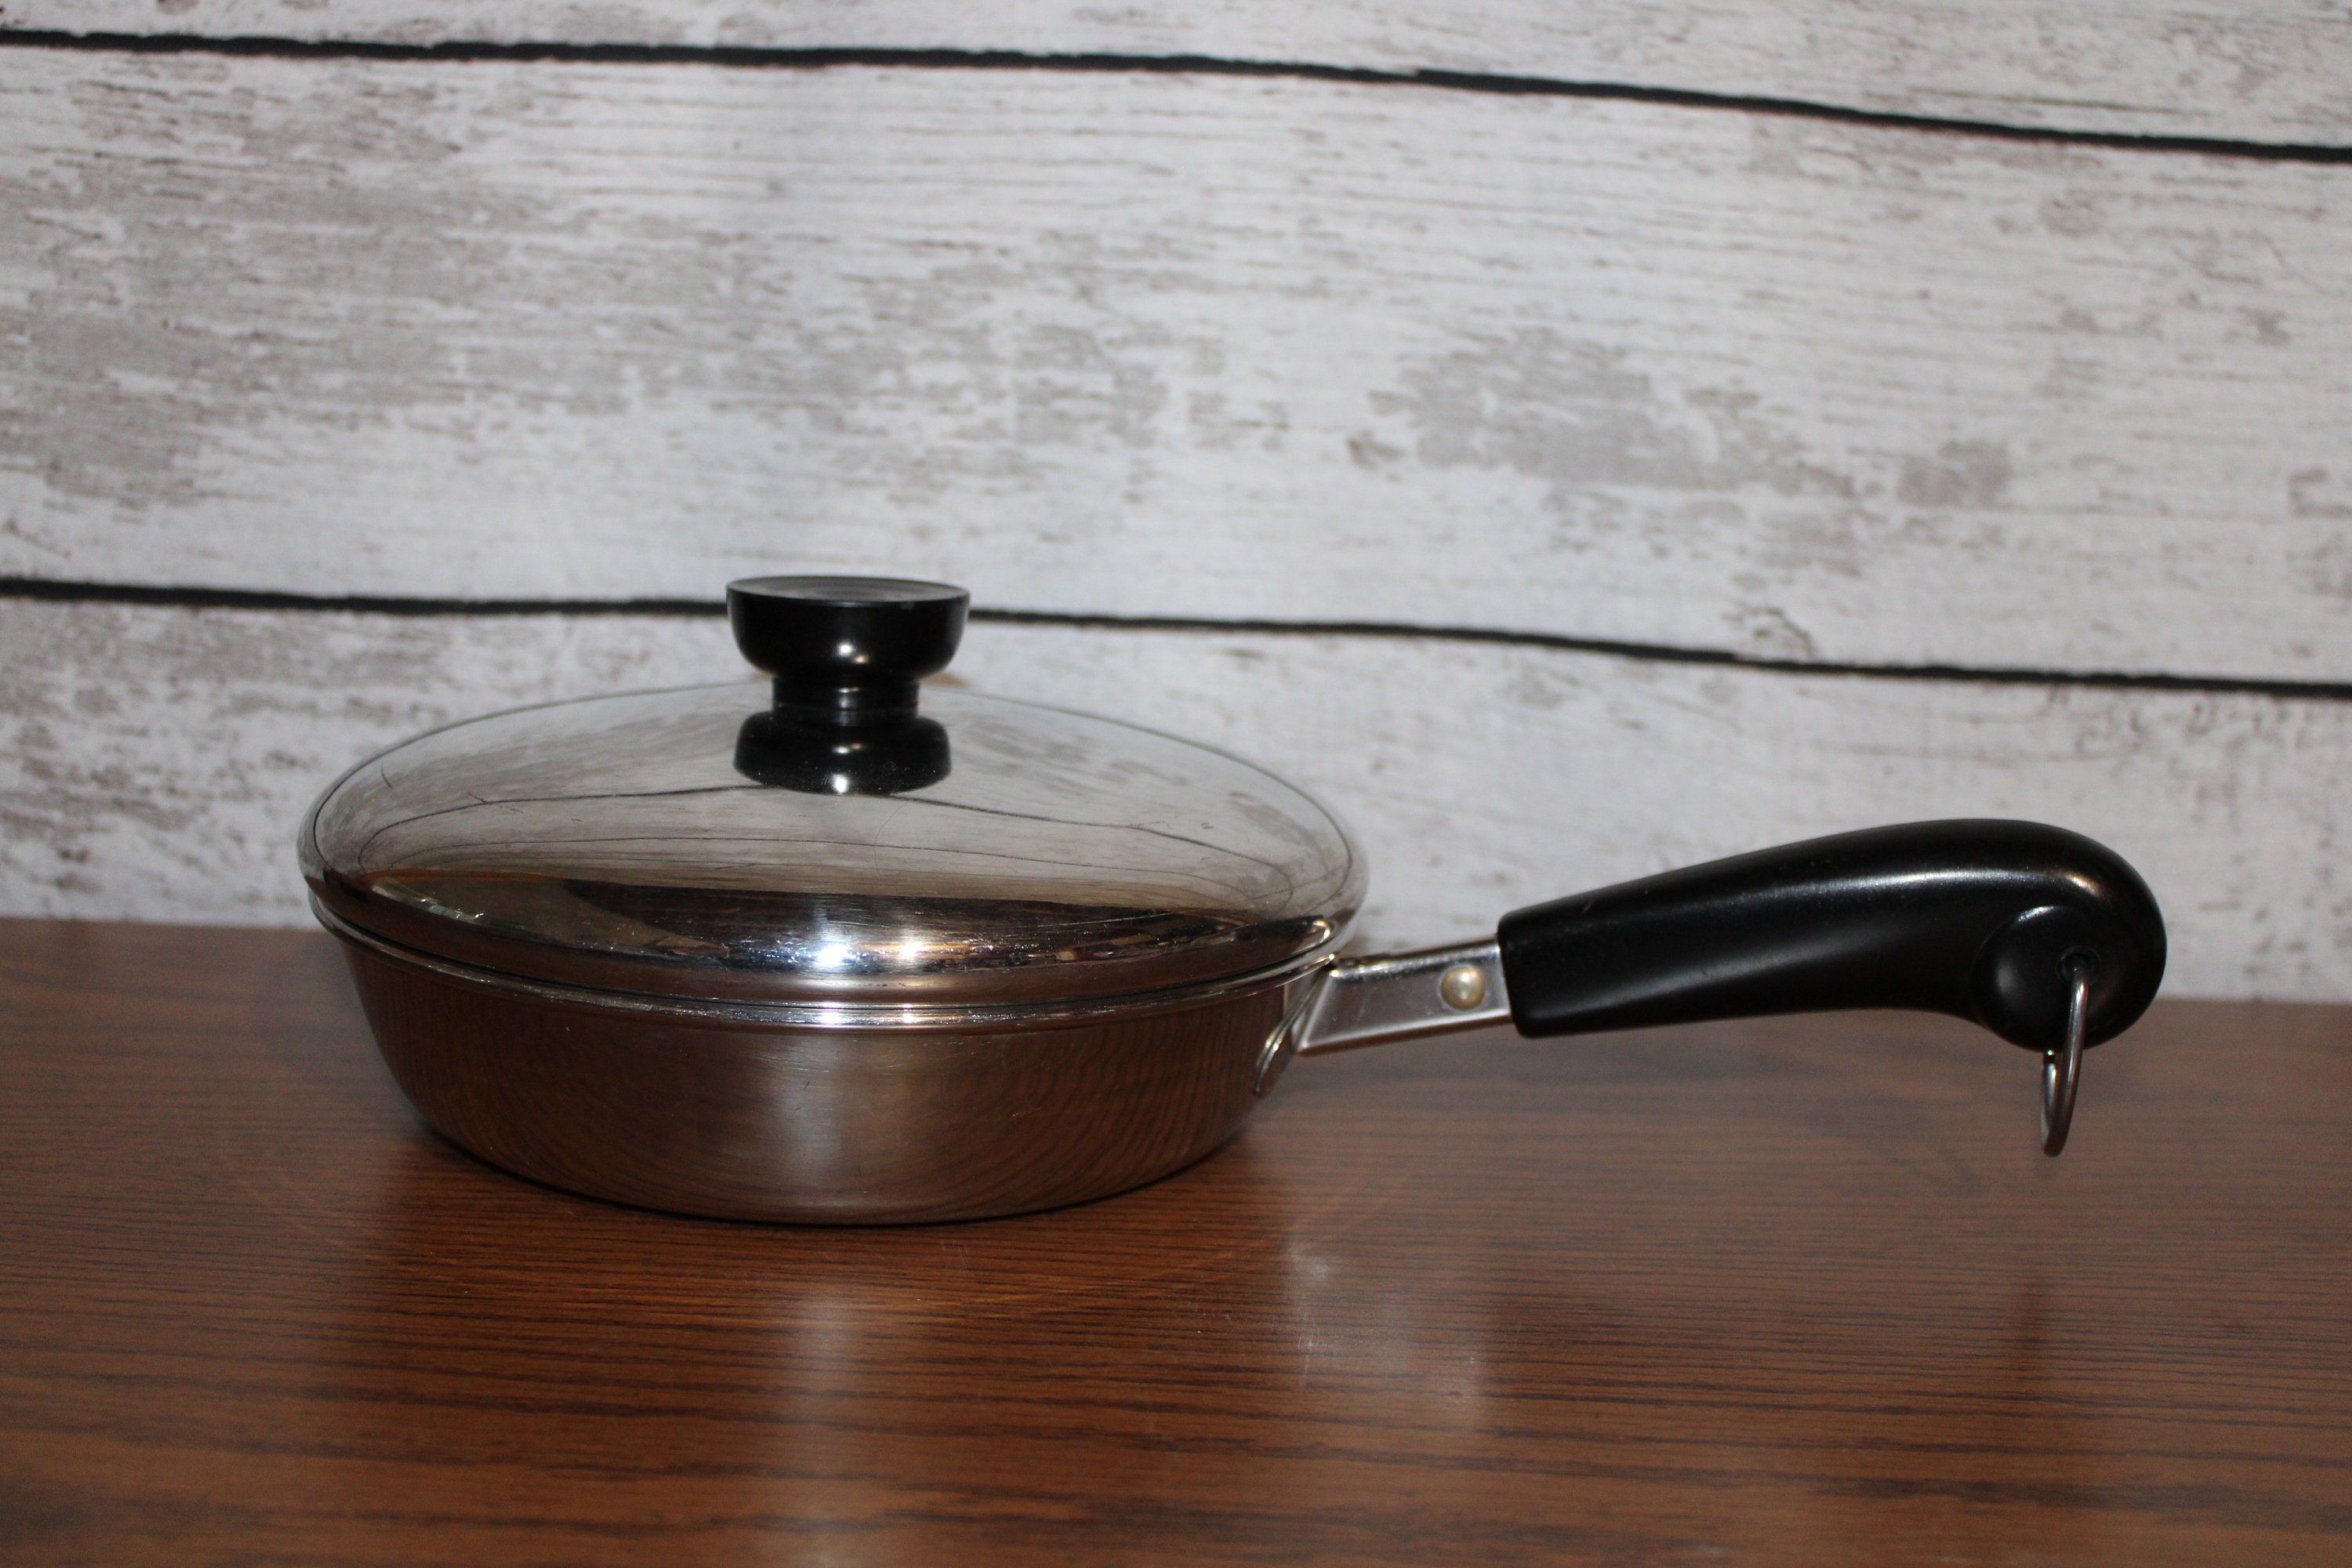 Authentic kitchen Fry Pan Nonstick 2.6-qt 10.3” Skillet Casserole Lid  Cookware